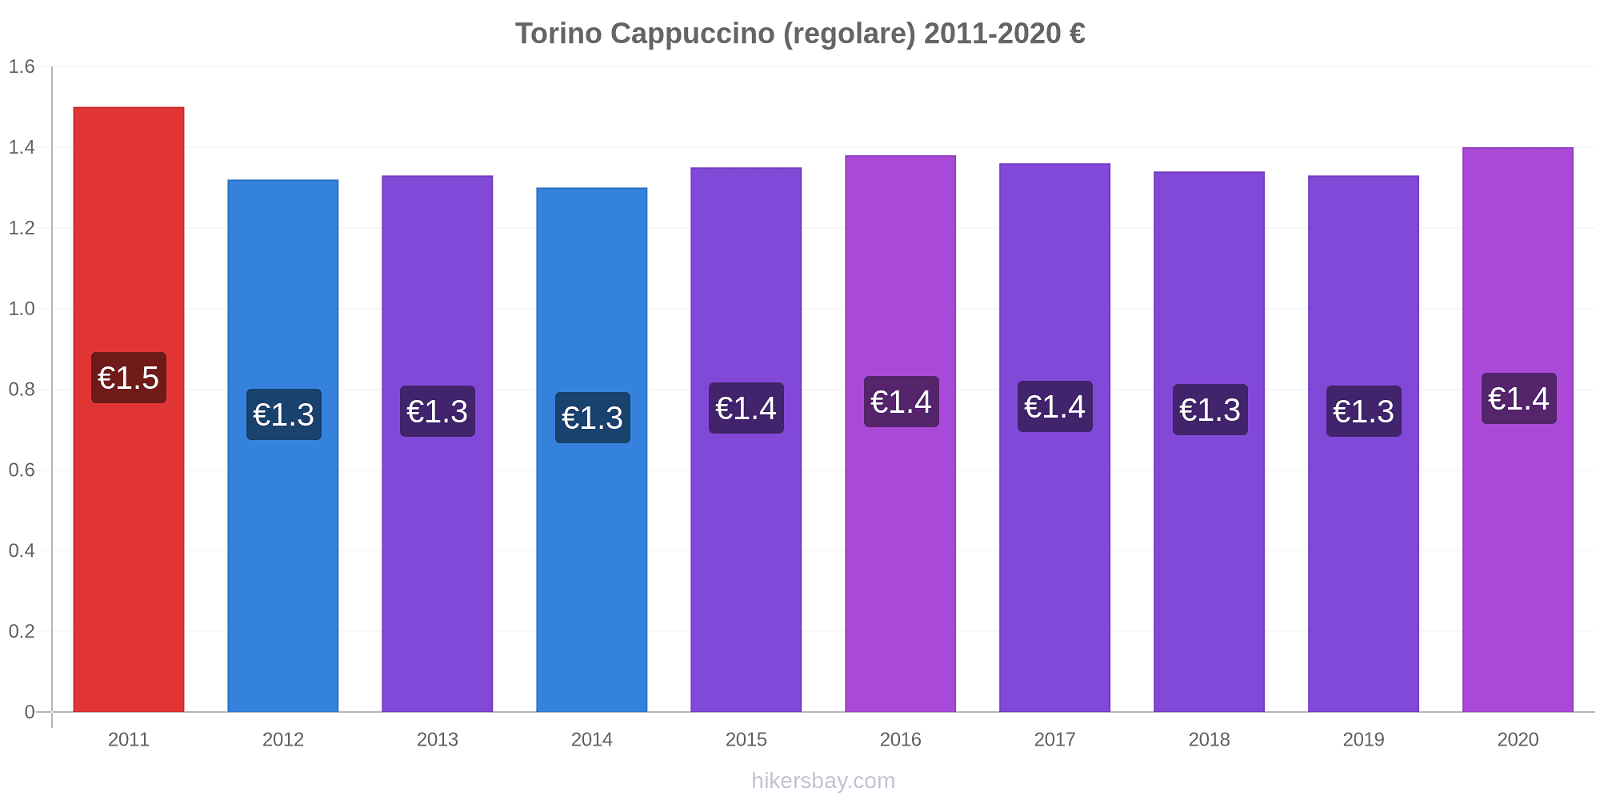 Torino variazioni di prezzo Cappuccino (normale) hikersbay.com